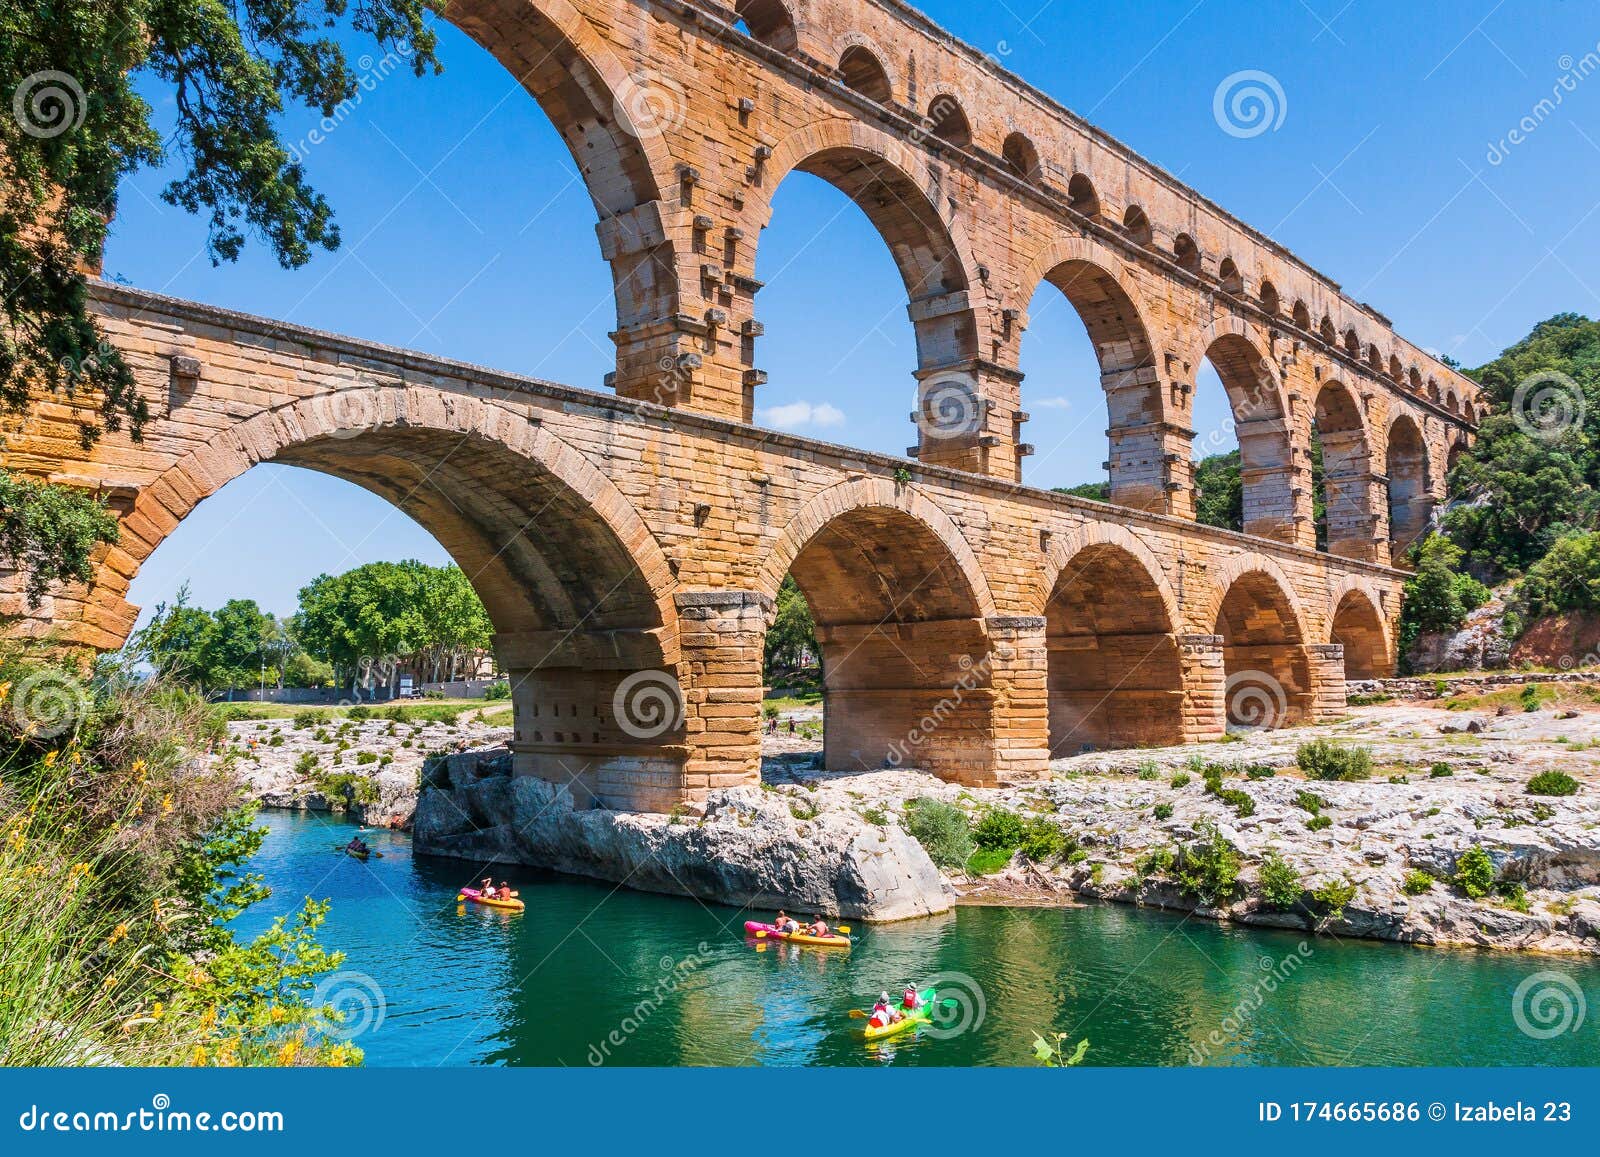 nimes, france. ancient aqueduct of pont du gard.